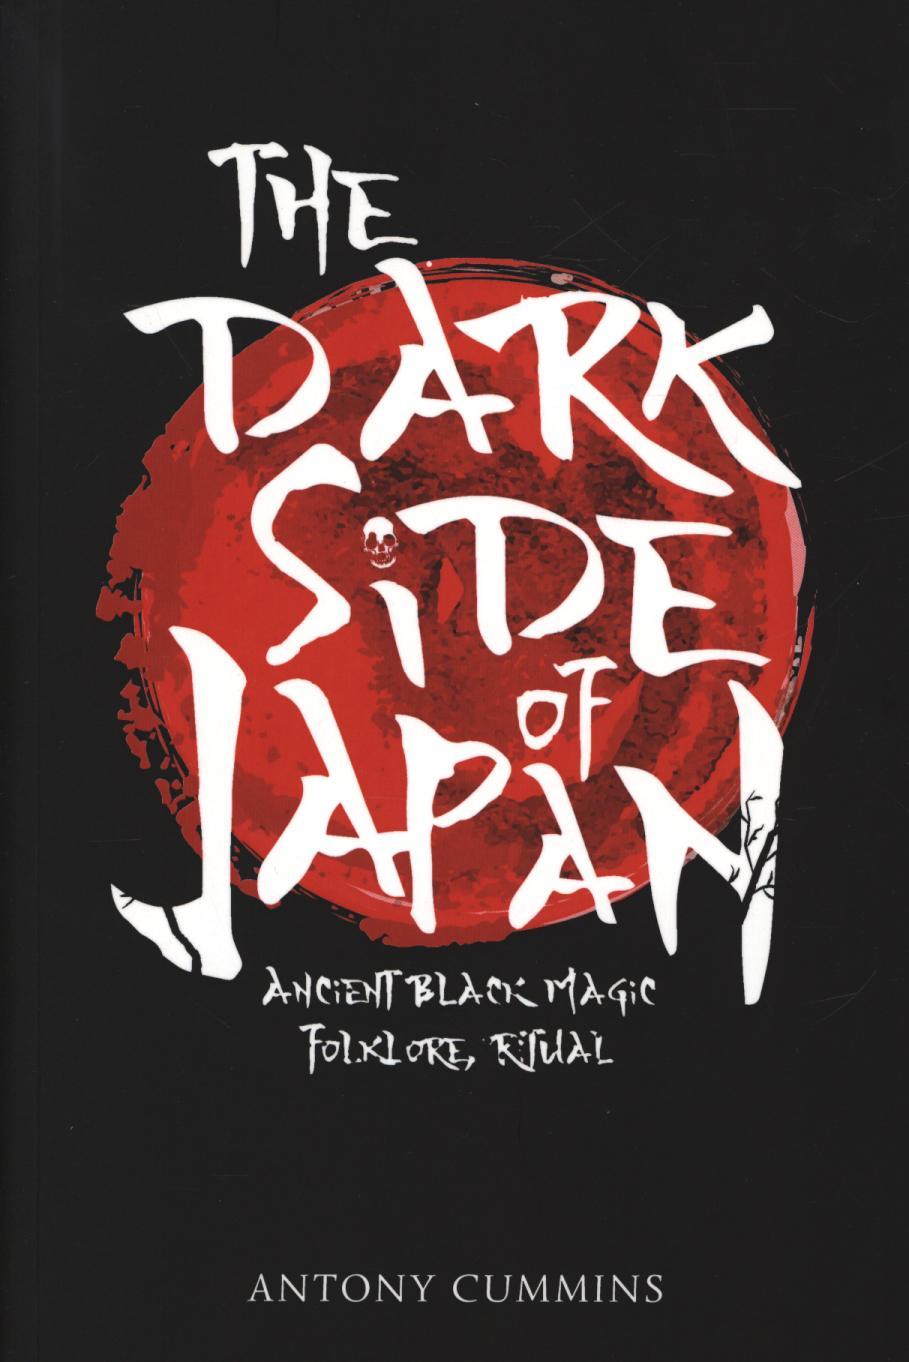 Dark Side of Japan